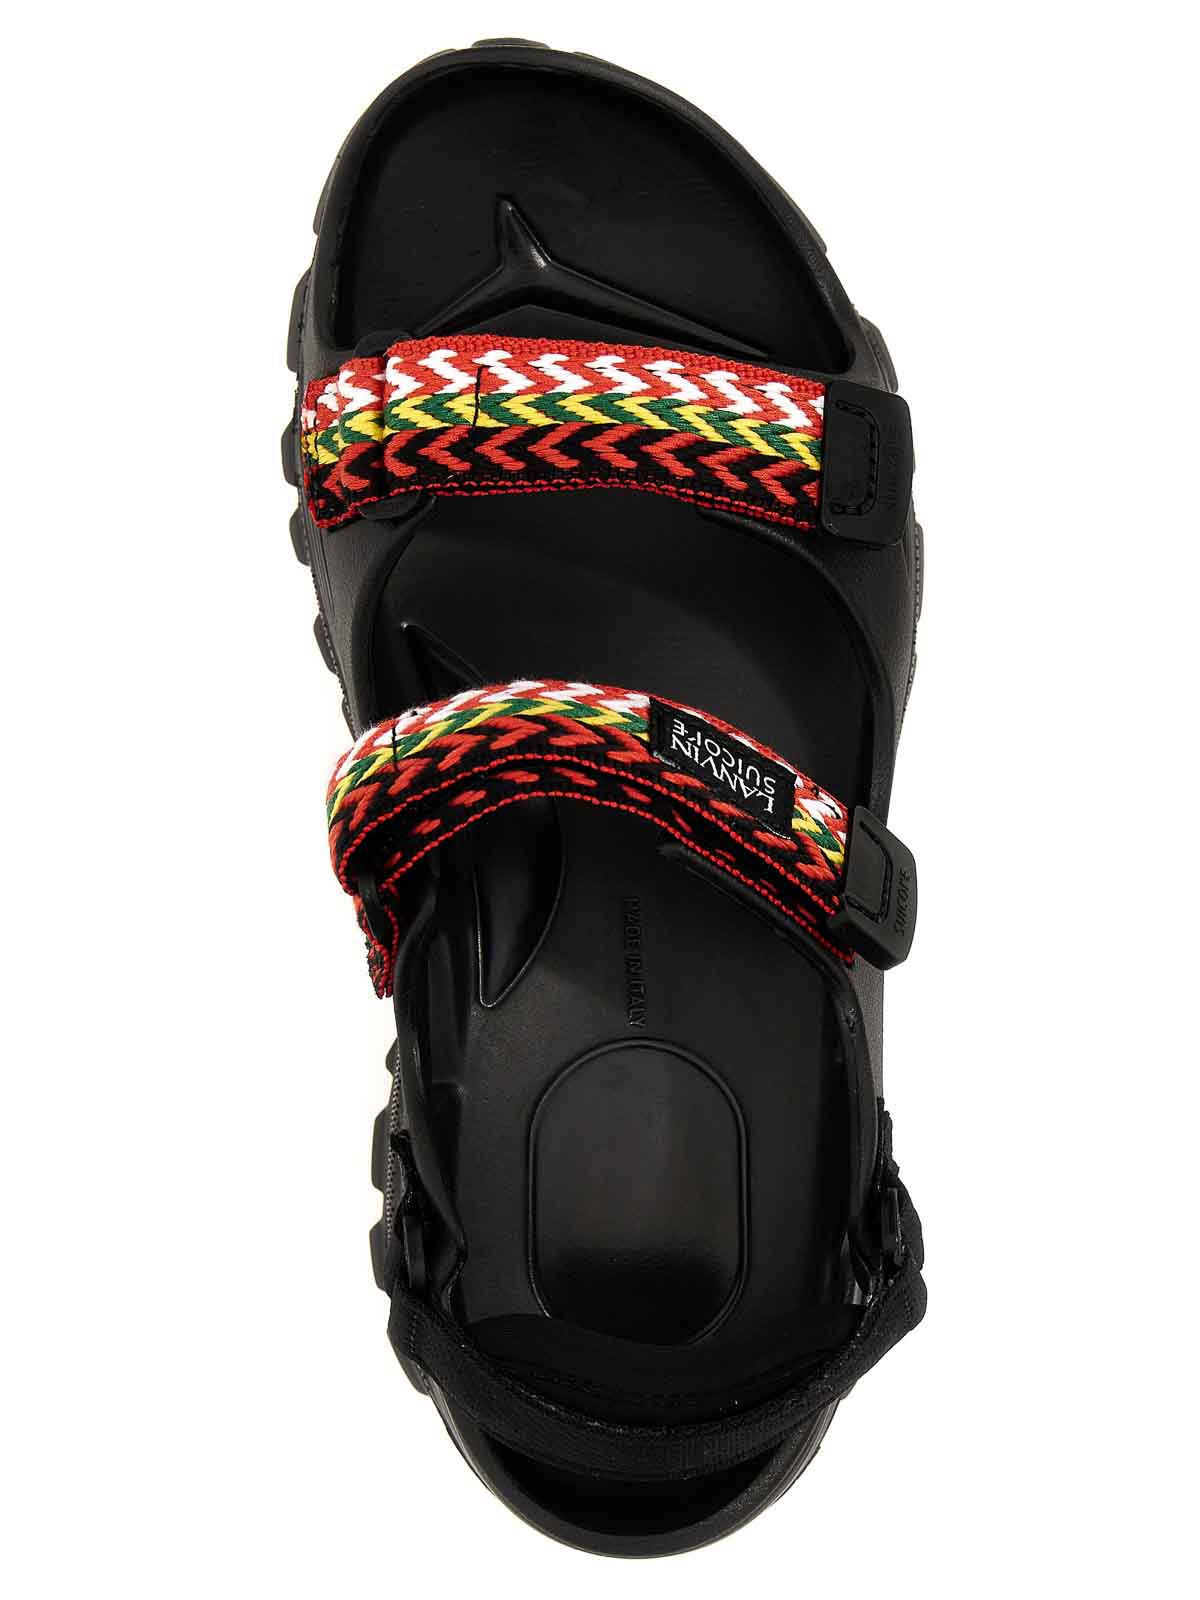 Shop Lanvin X Suicoke Sandals In Black